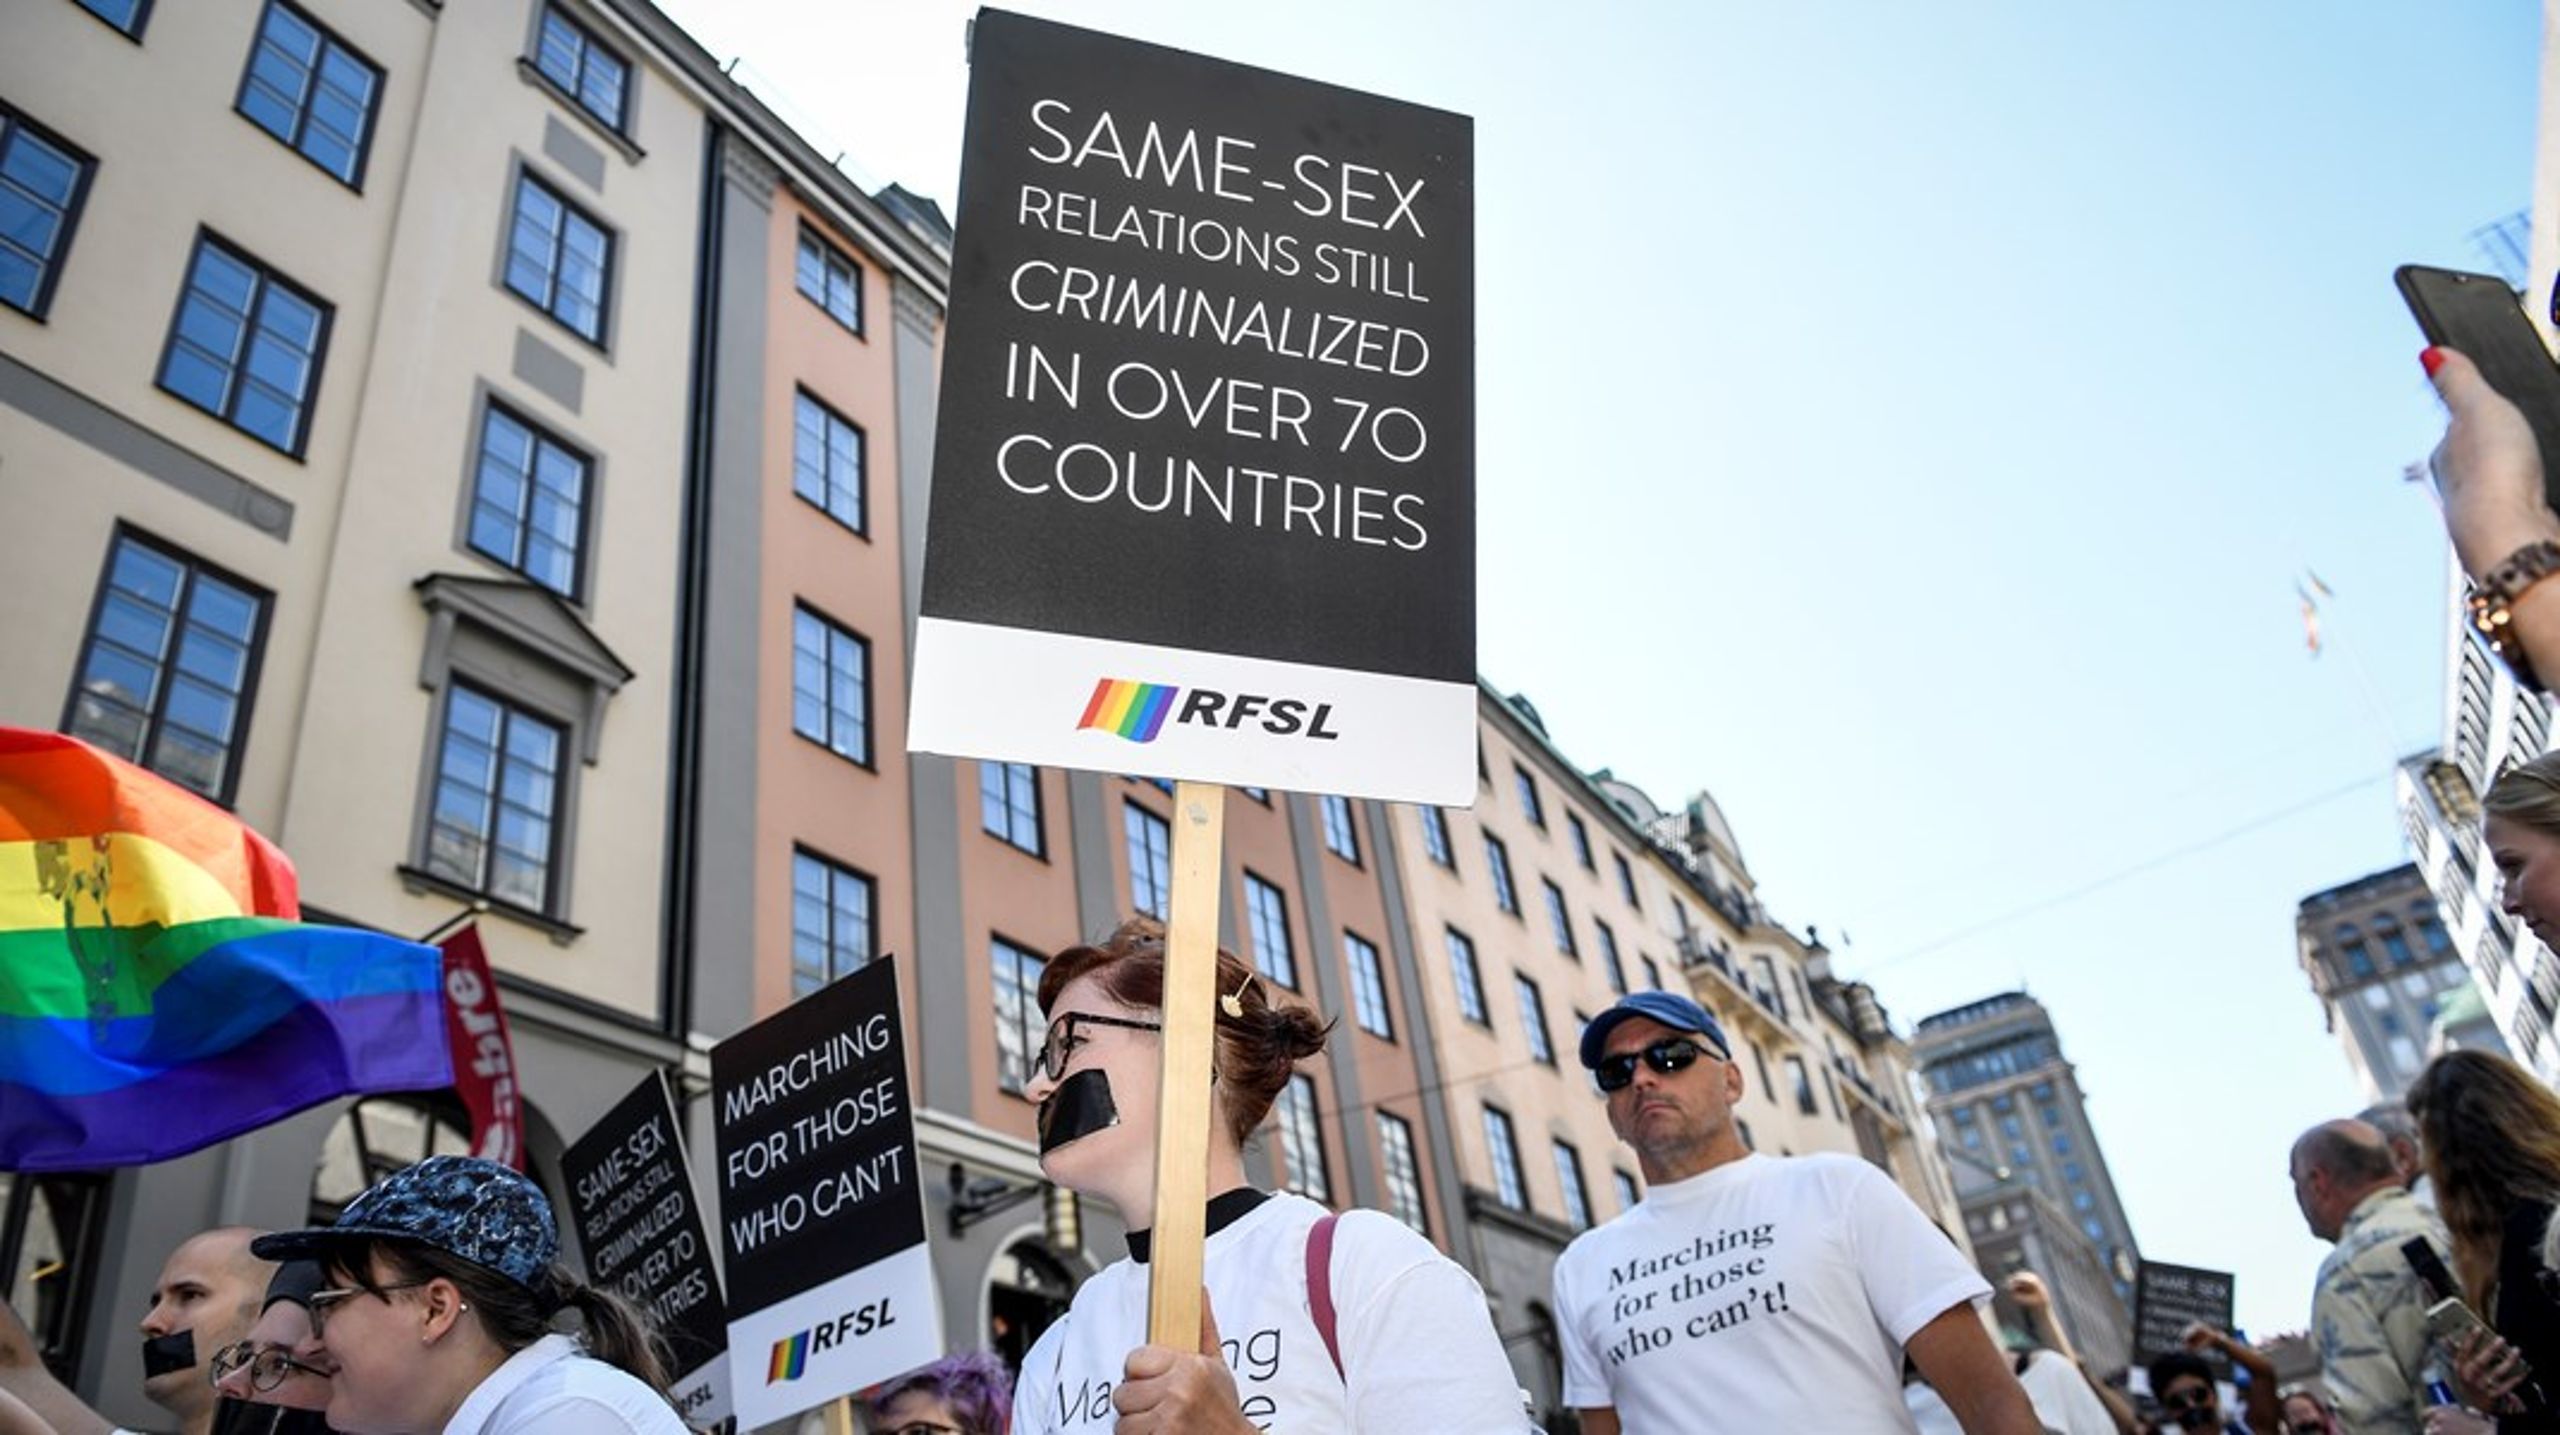 Stockholm Pride 2019. ”Sverige har ett jobb att göra även på hemmaplan för att tillgodose behovet av hivprevention, sexualundervisning i skolorna, särskilda insatser till de grupper som drabbas hårdast av hiv och ta steg mot avkriminalisering av utsatta grupper.”